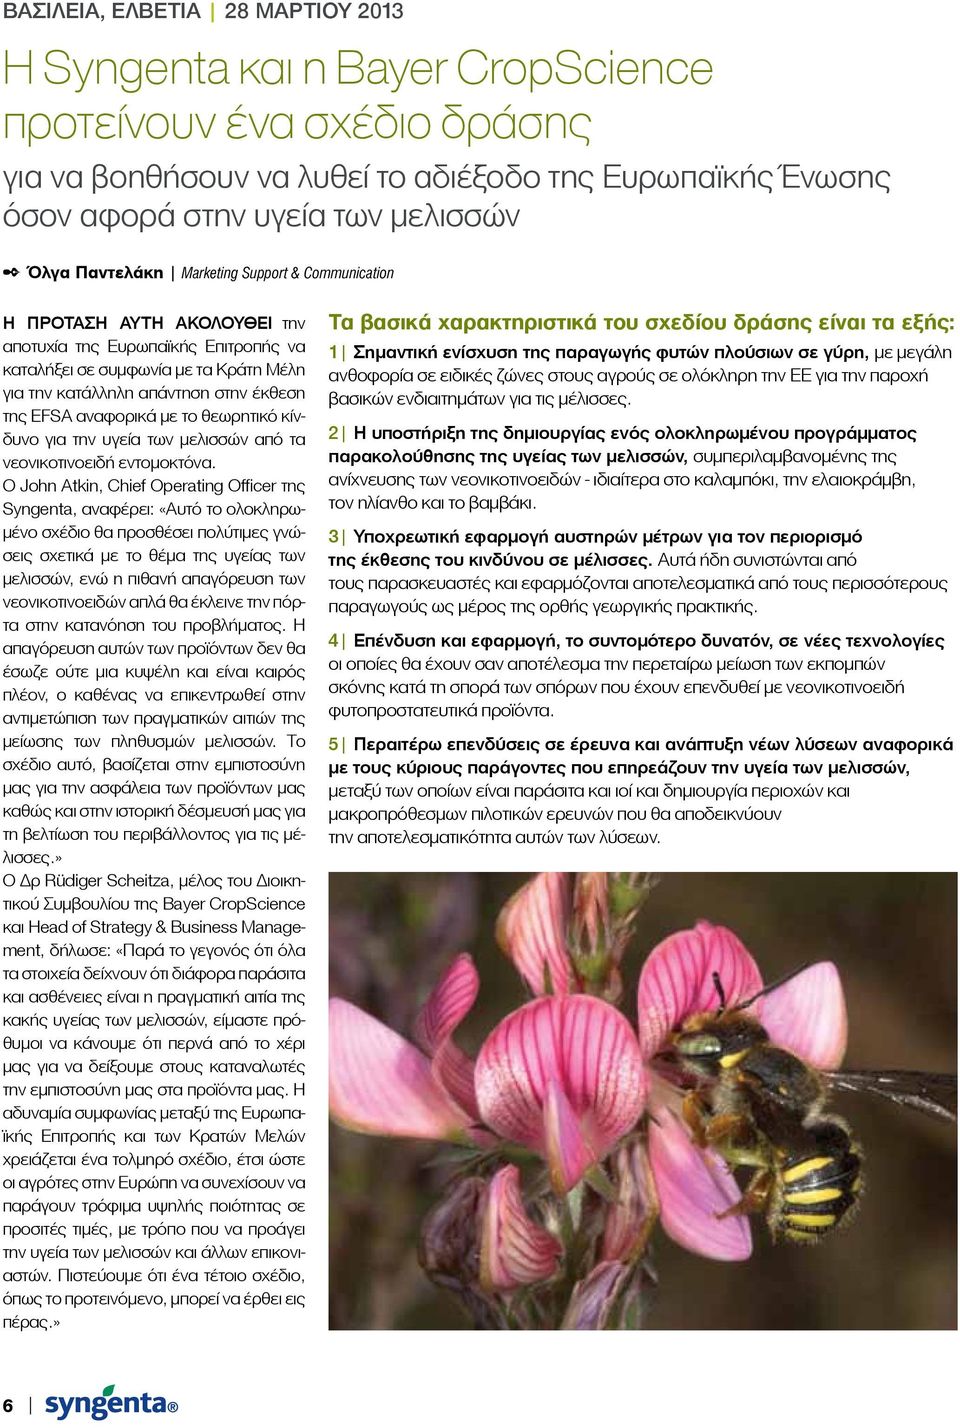 αναφορικά με το θεωρητικό κίνδυνο για την υγεία των μελισσών από τα νεονικοτινοειδή εντομοκτόνα.